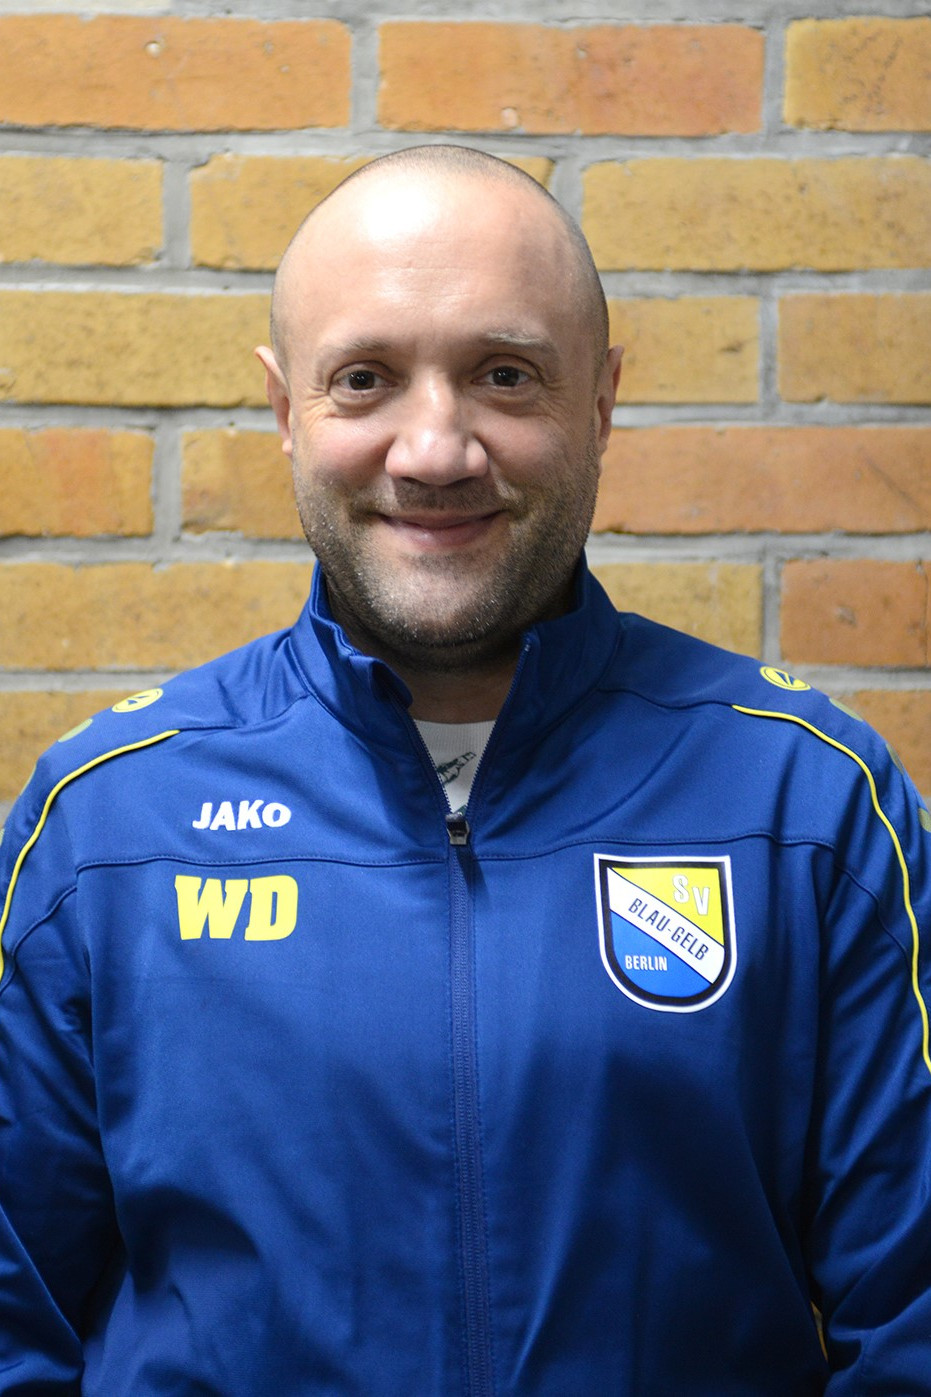 Wojciech "Wojtek" Dziedzic